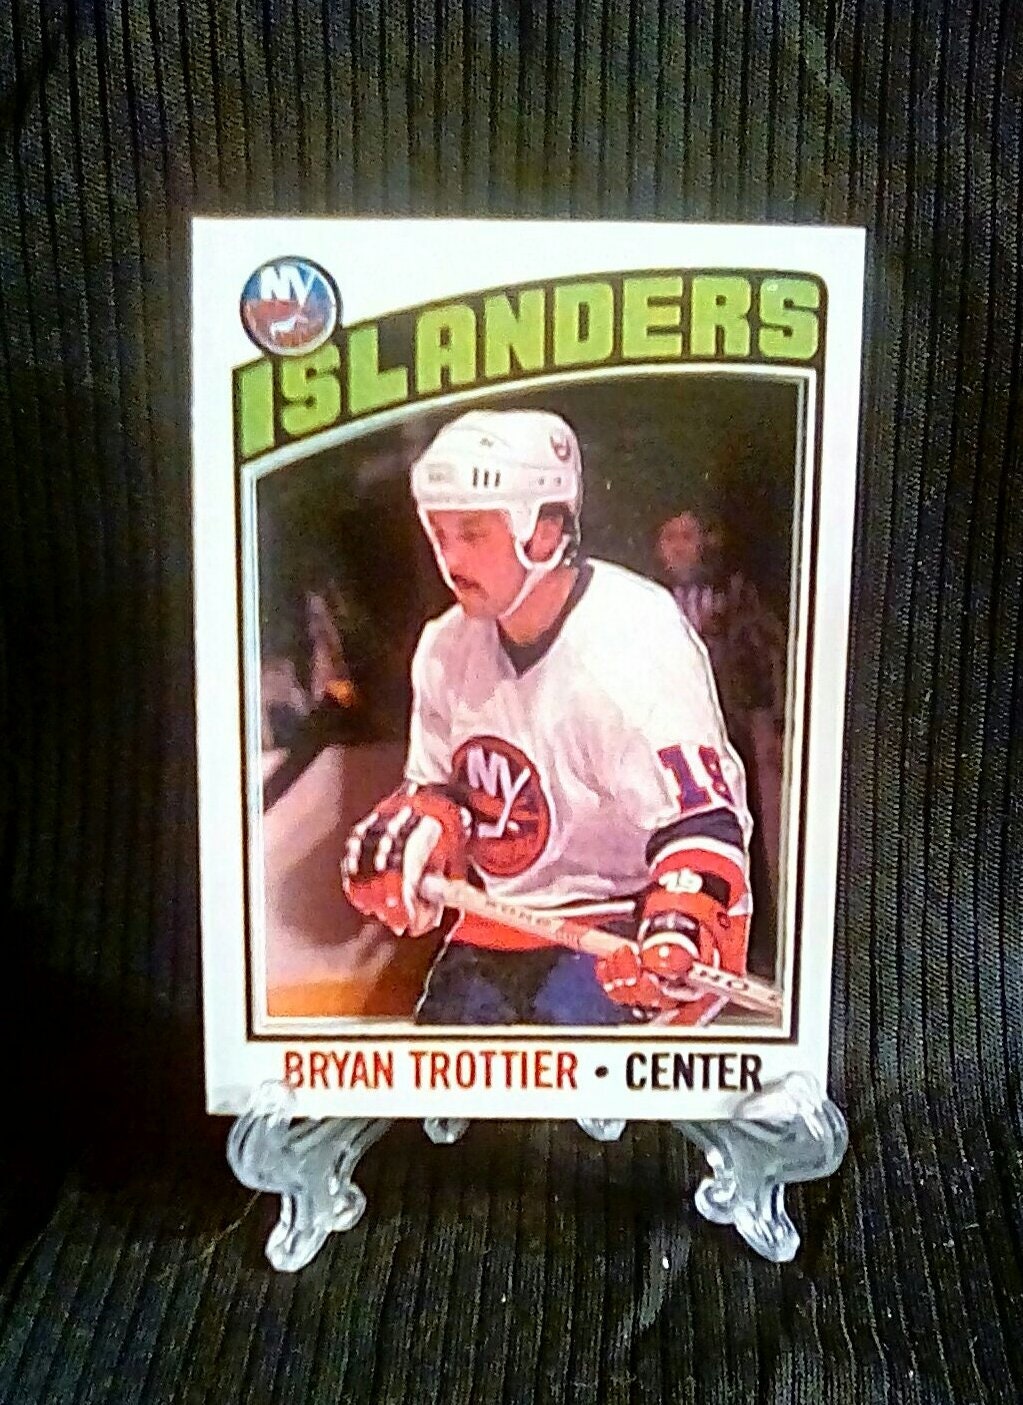 Bryan Trottier Signed New York Islanders White Jersey Inscribed HOF '97  (JSA)